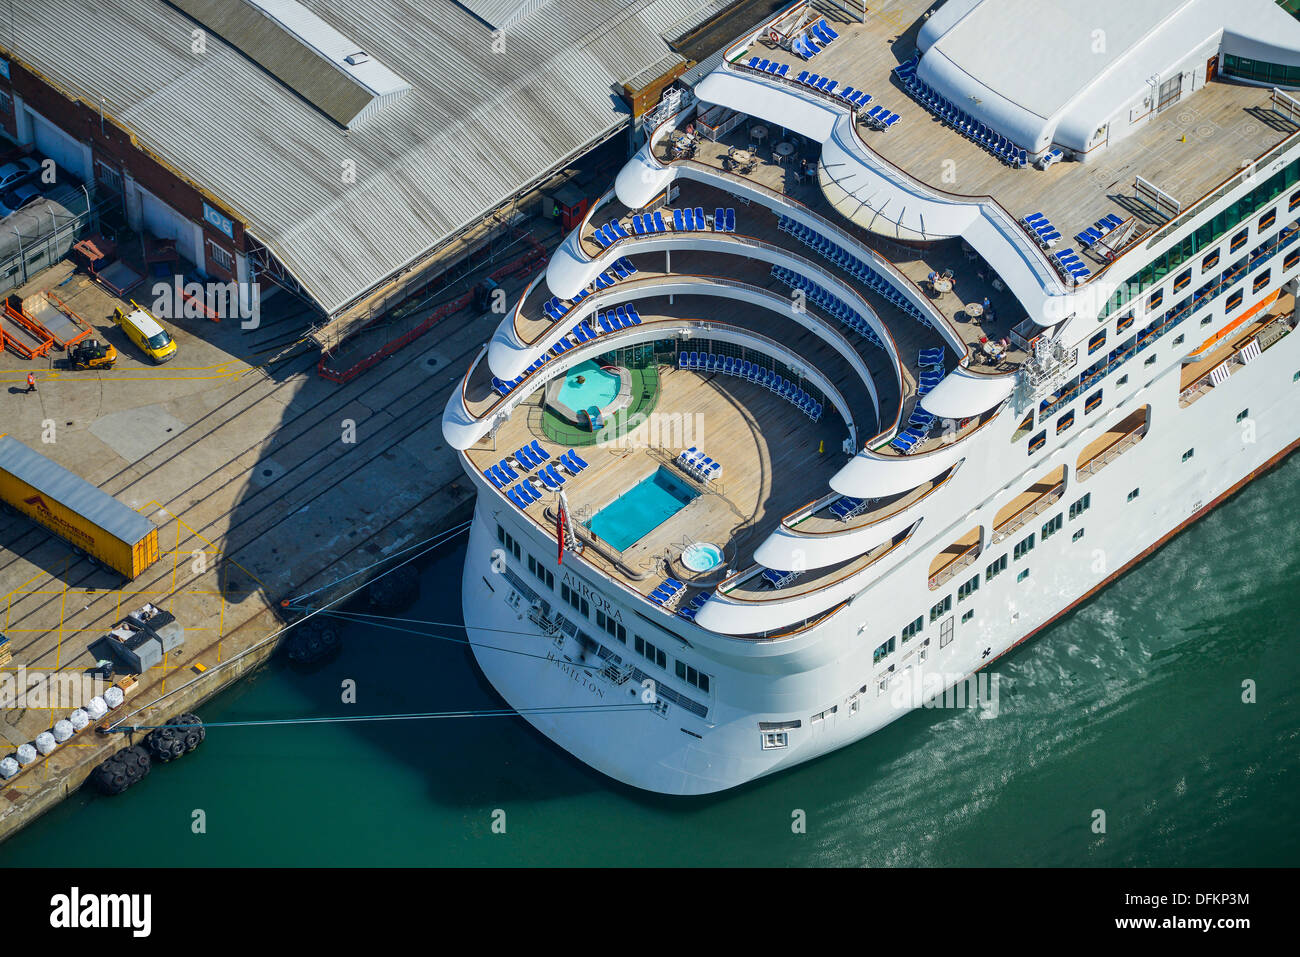 Photographie aérienne du navire de croisière Aurora Banque D'Images